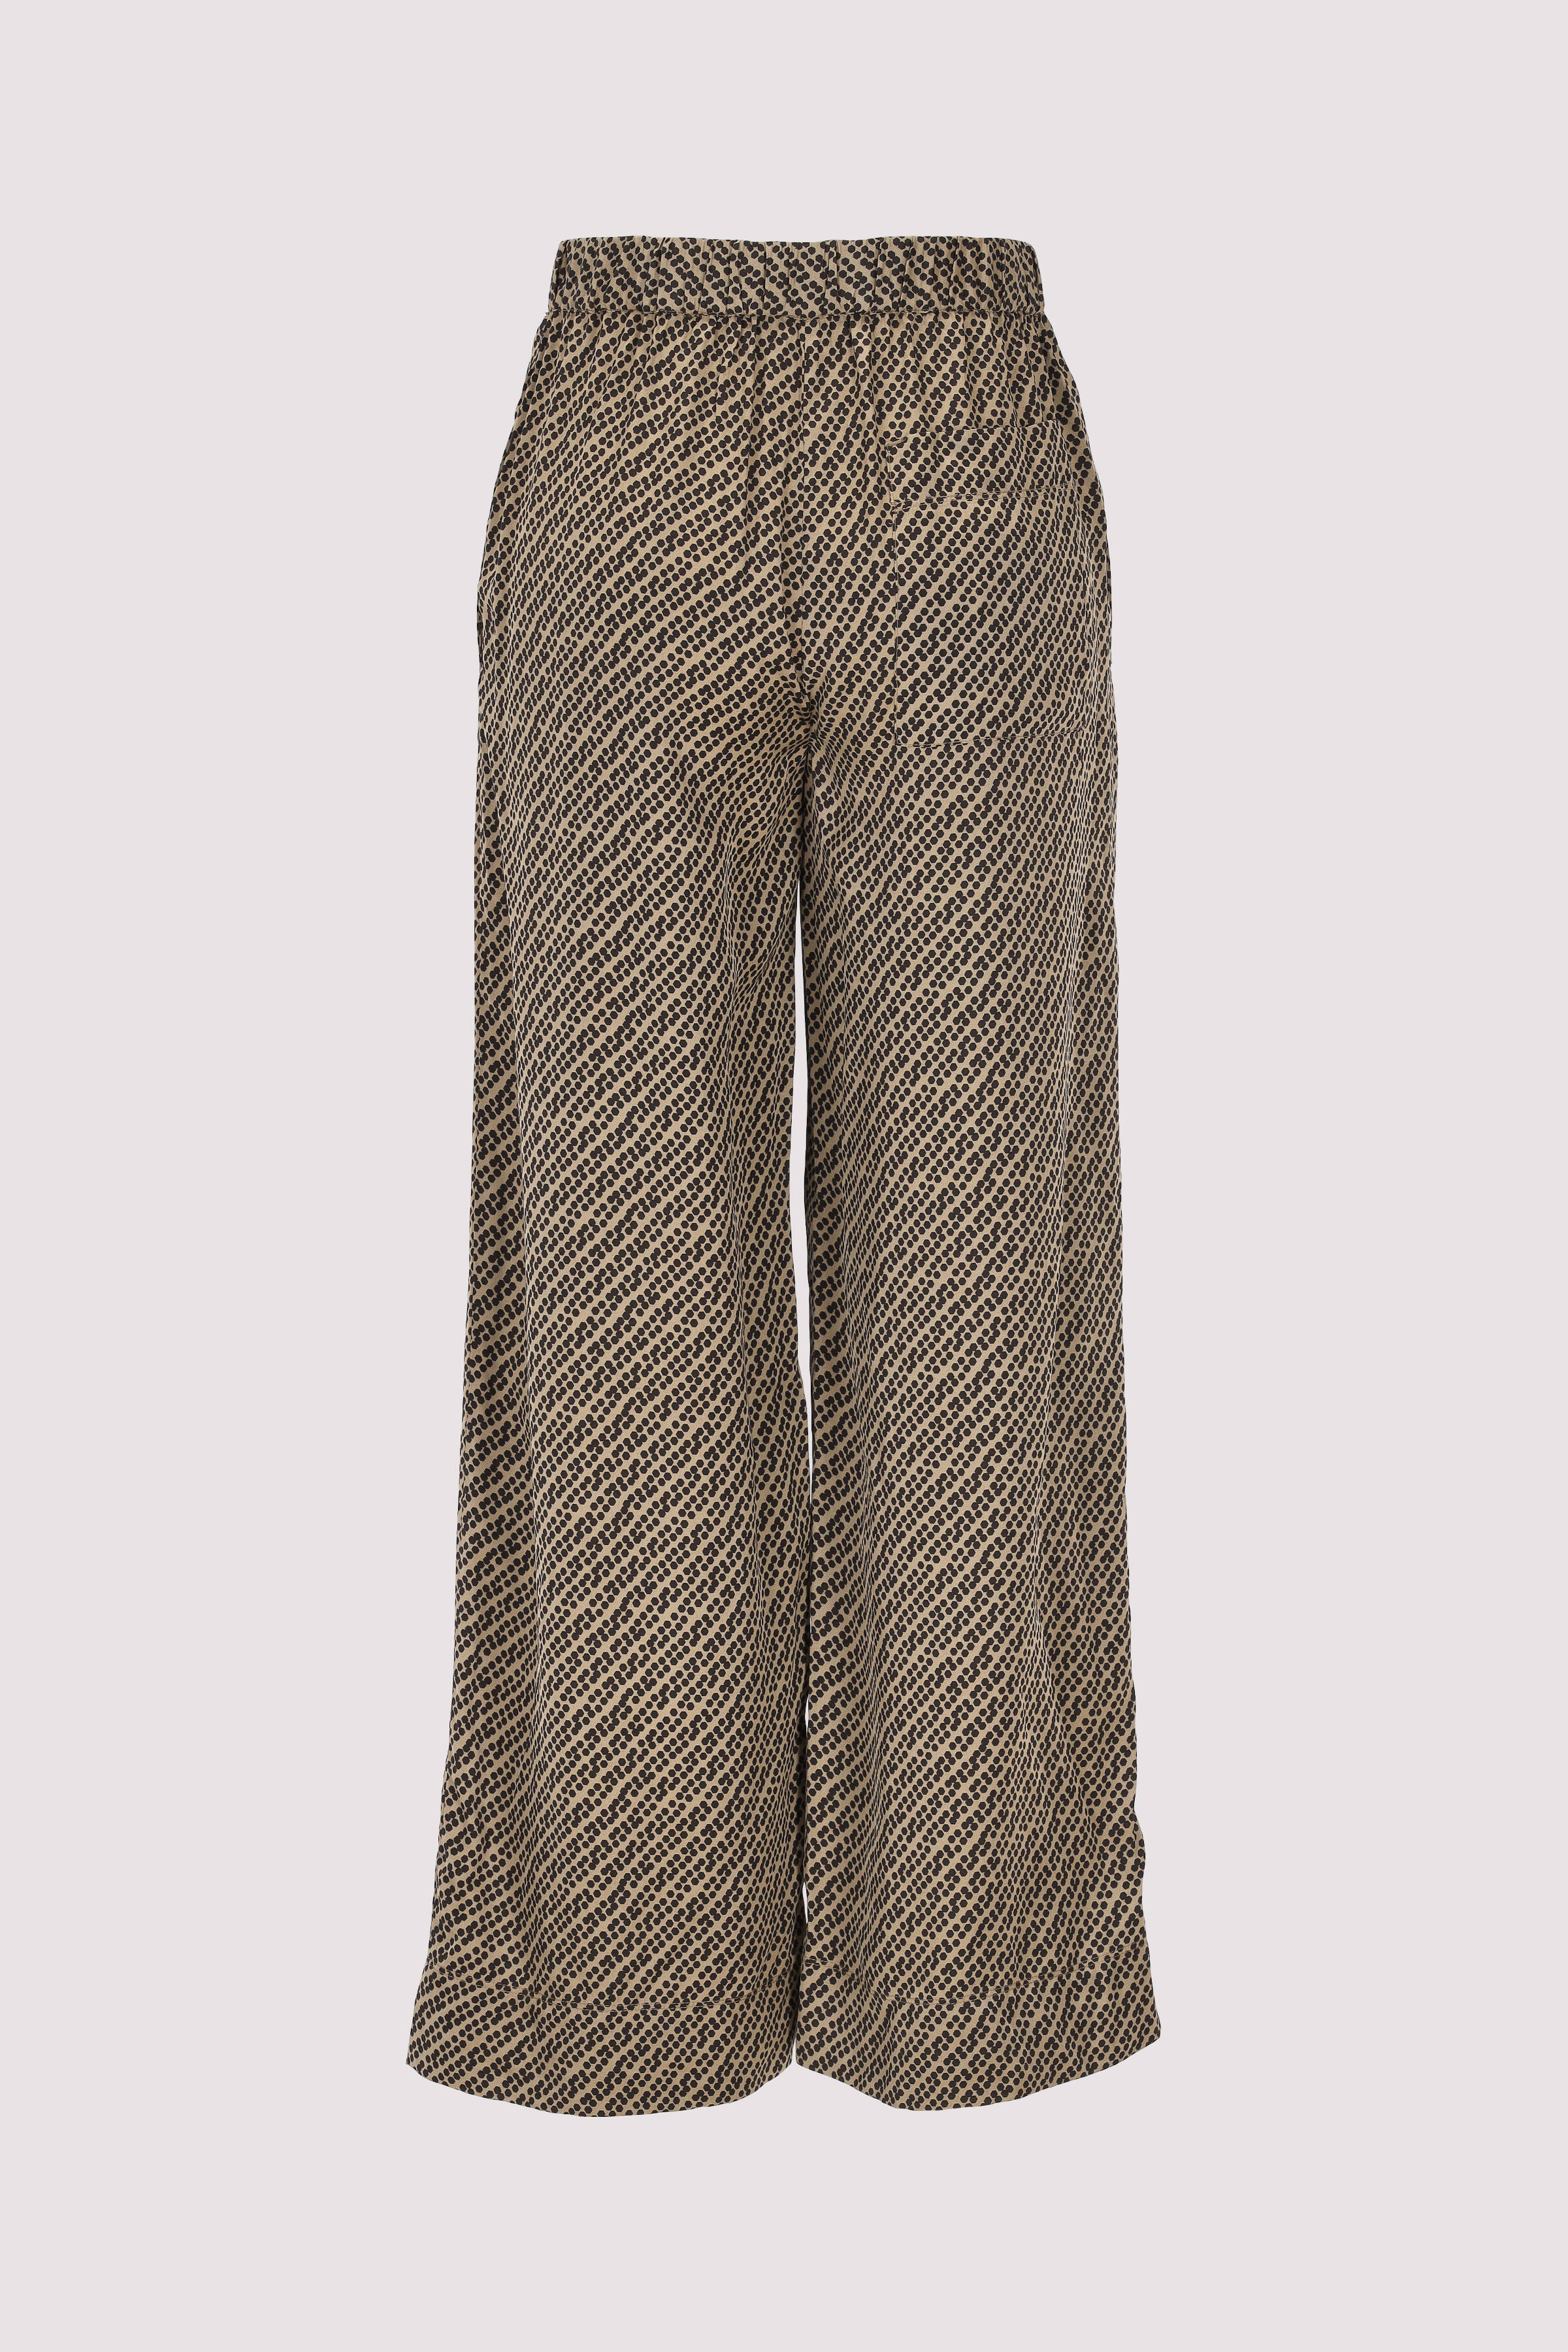 Pants, printed, wide leg, elas